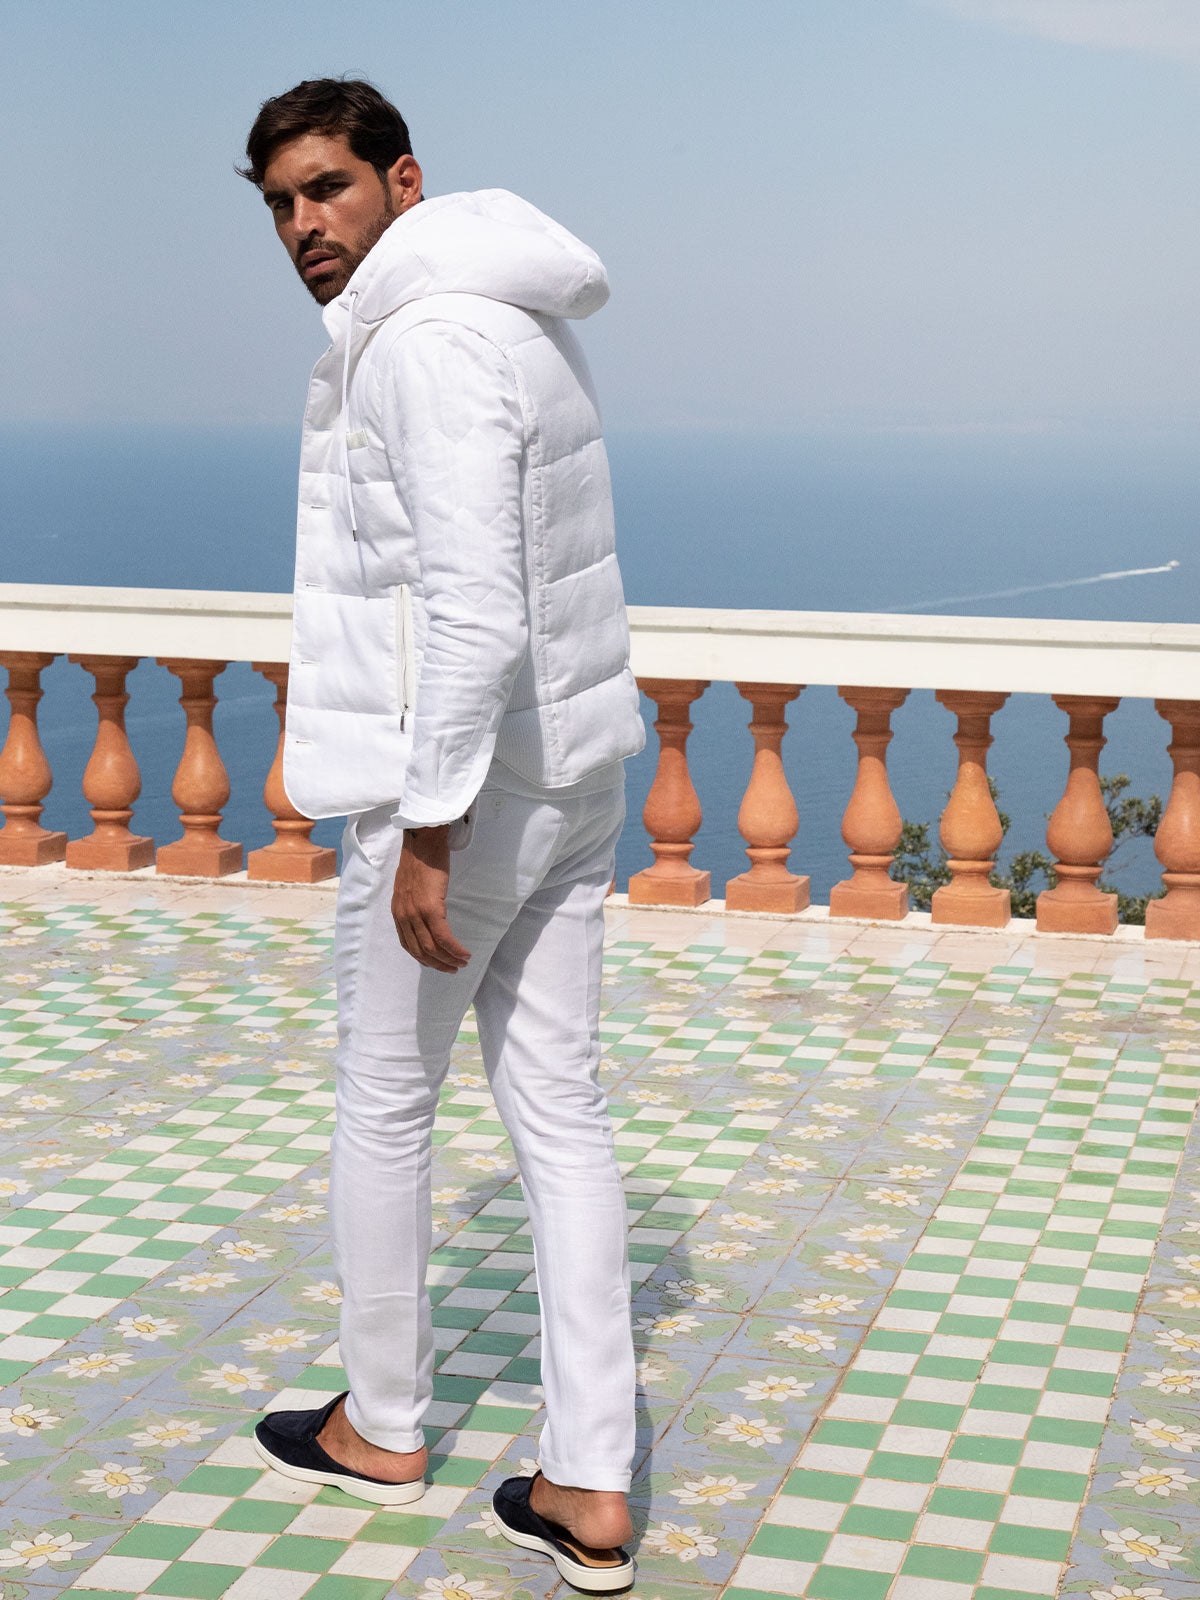 Pantalone Positano 100% Capri white linen trouser worn by model